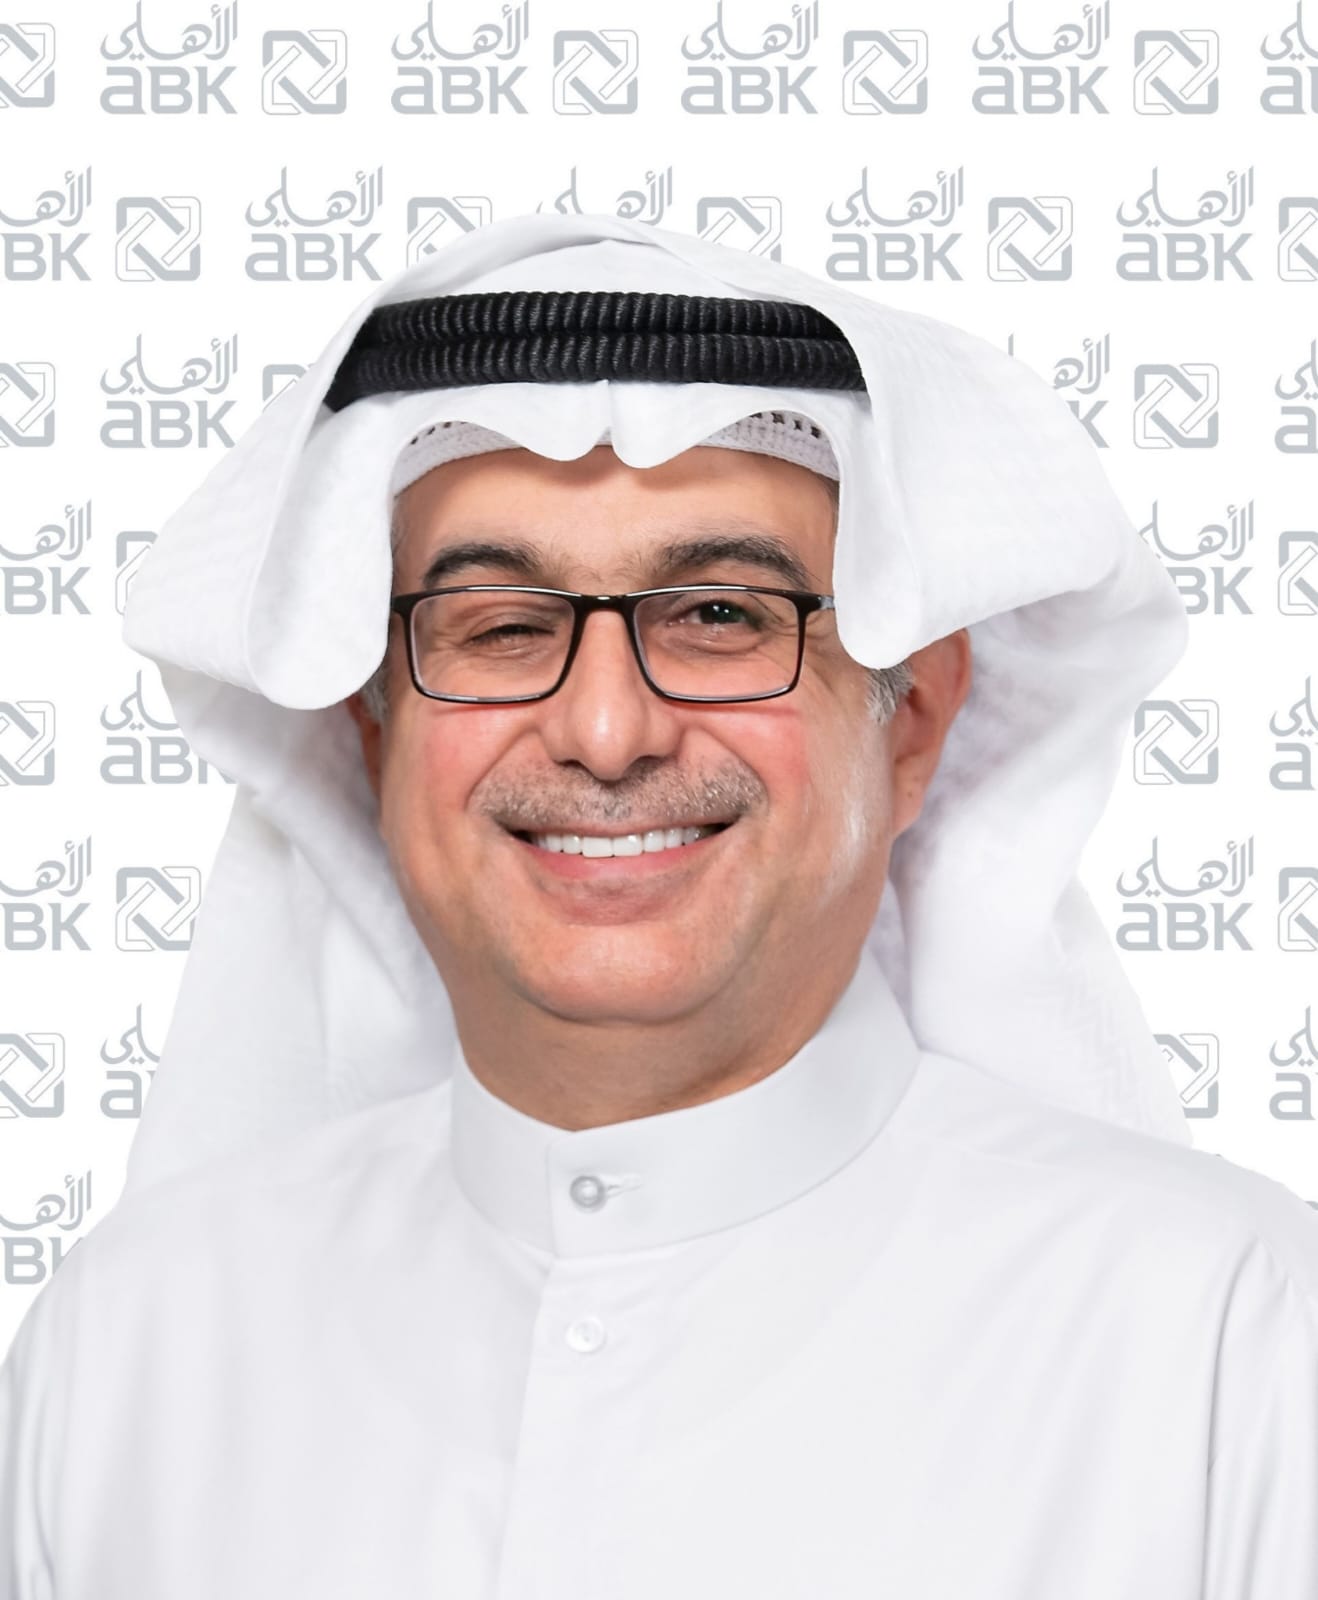  البنك الأهلي الكويتي بصدد البدء بعملية الاكتتاب في زيادة رأسماله بنسبة 26.7% 